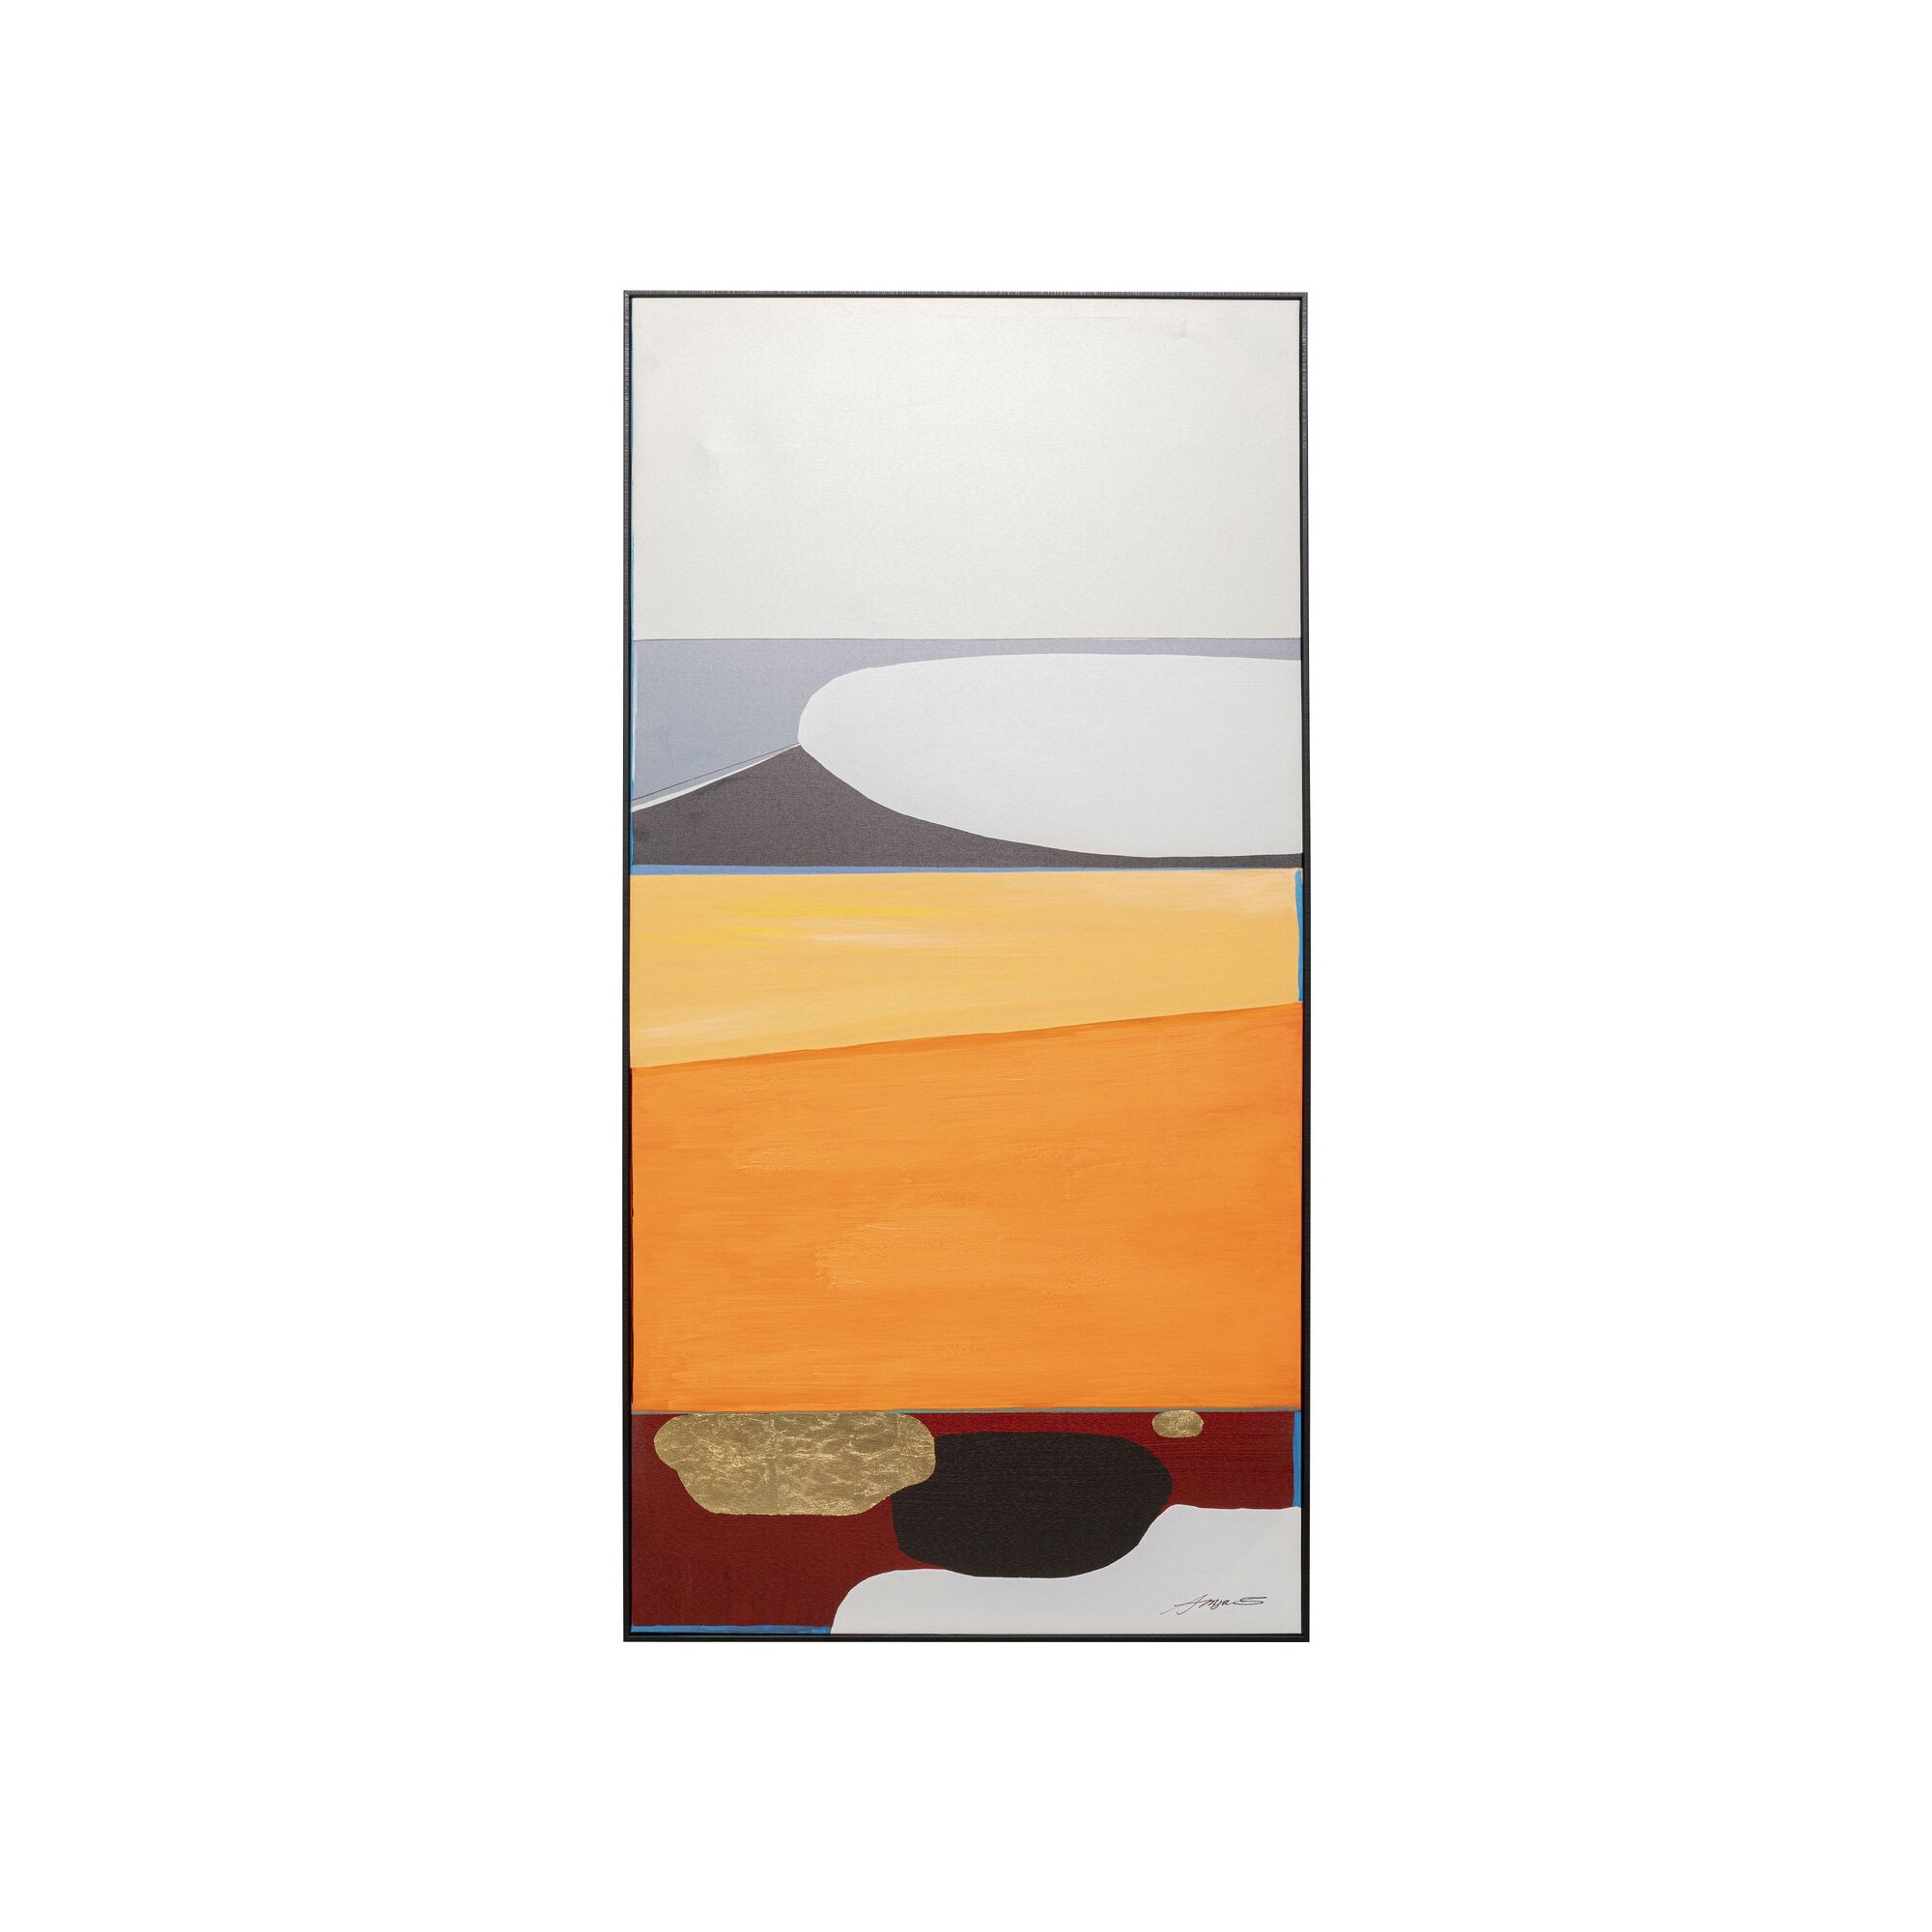 Tableau encadré Abstract Shapes orange 73x143cm